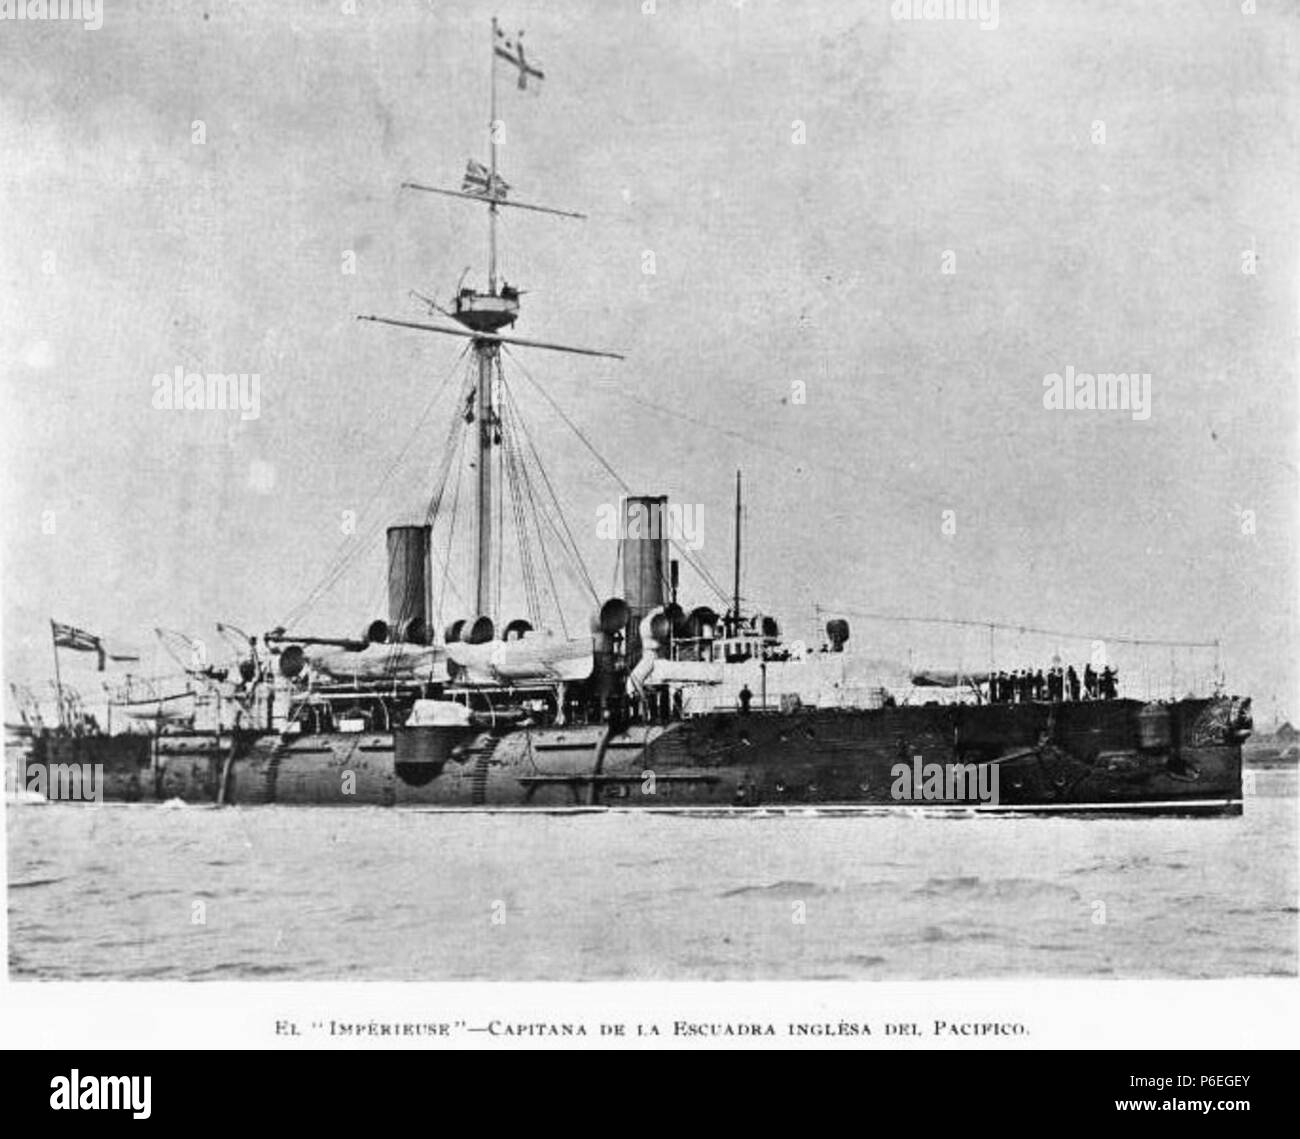 Español : Buque insignia de la escuadra británica en el Pacífico en 1897. En abril de ese año visitó Guatemala con motif de la exposición Centroamericana. 189755 Imperieuse1897 Banque D'Images